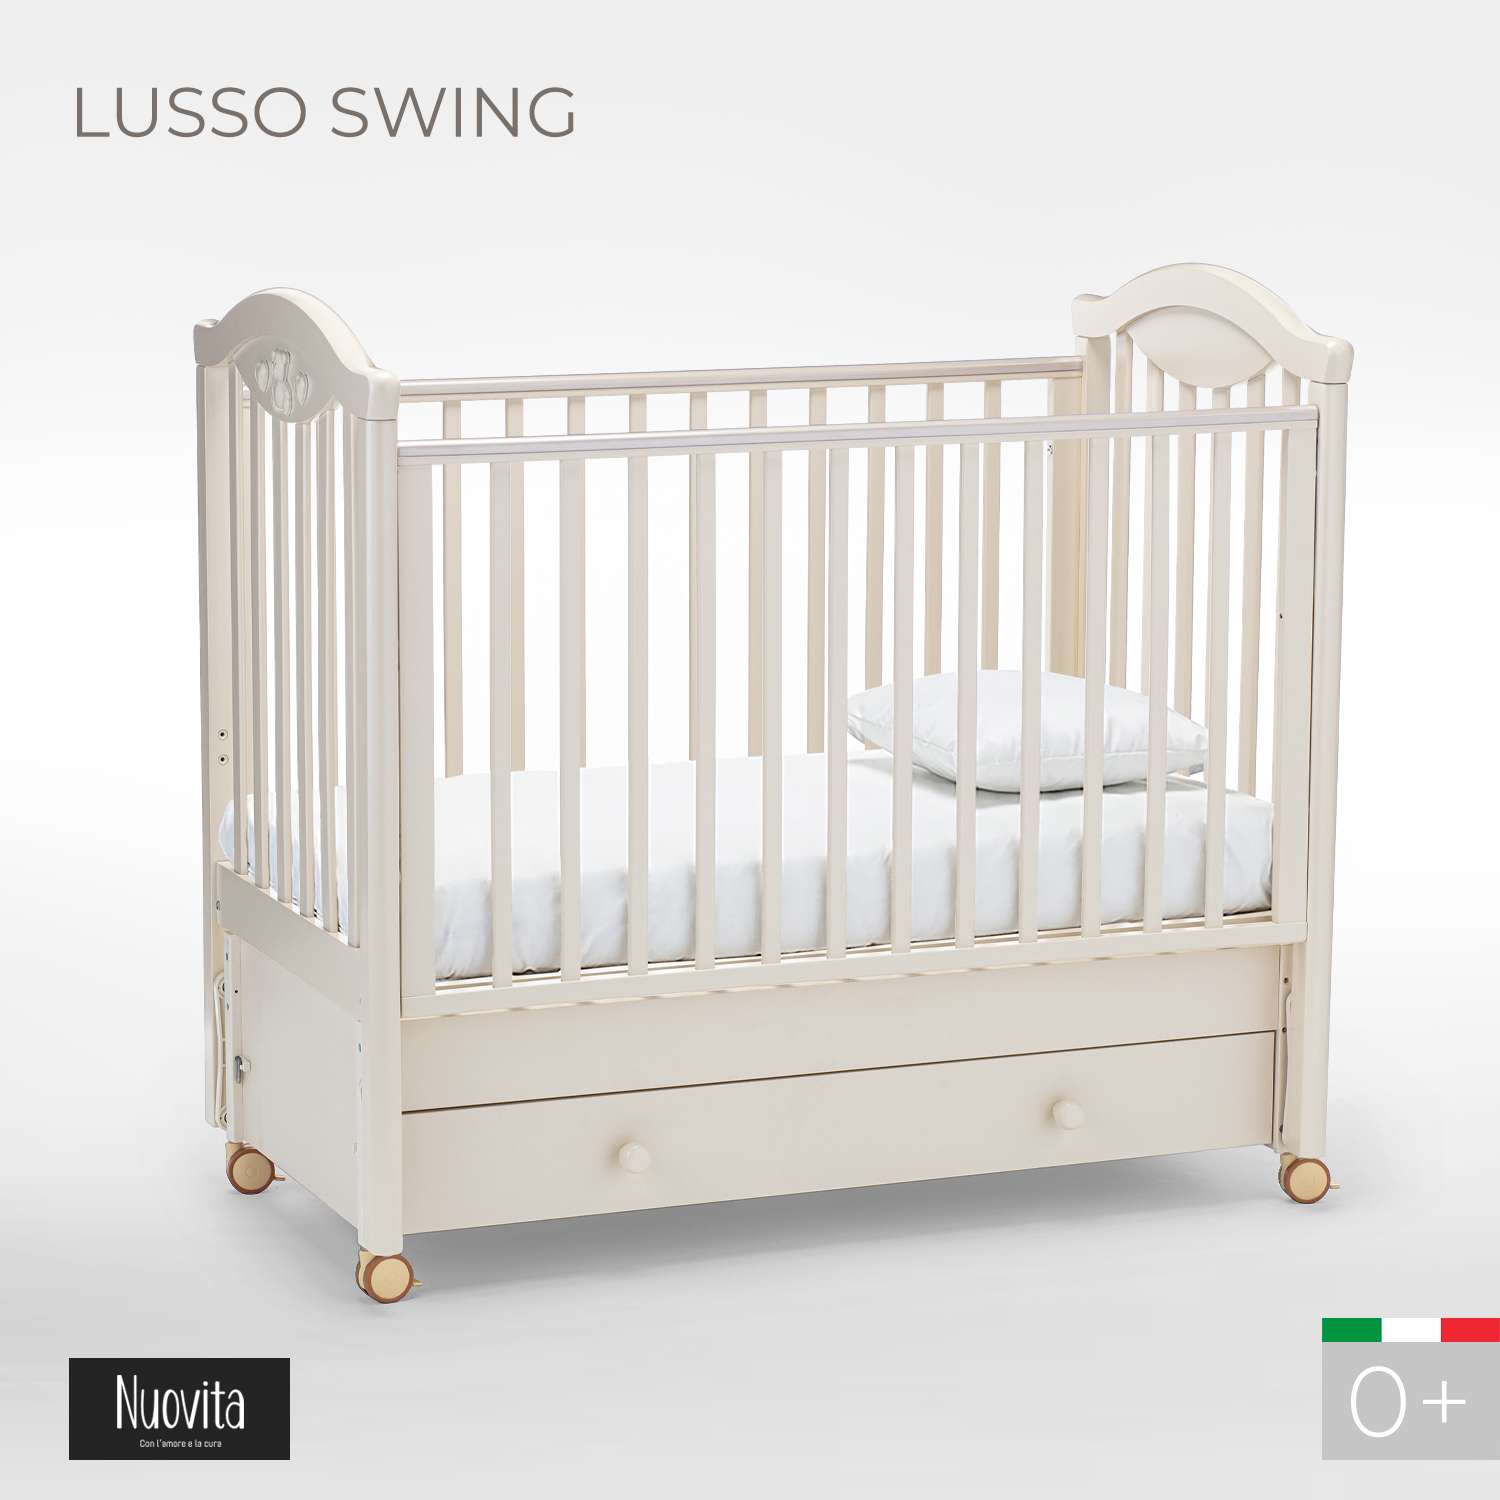 Детская кроватка Nuovita Lusso Swing прямоугольная, продольный маятник (слоновая кость) - фото 2